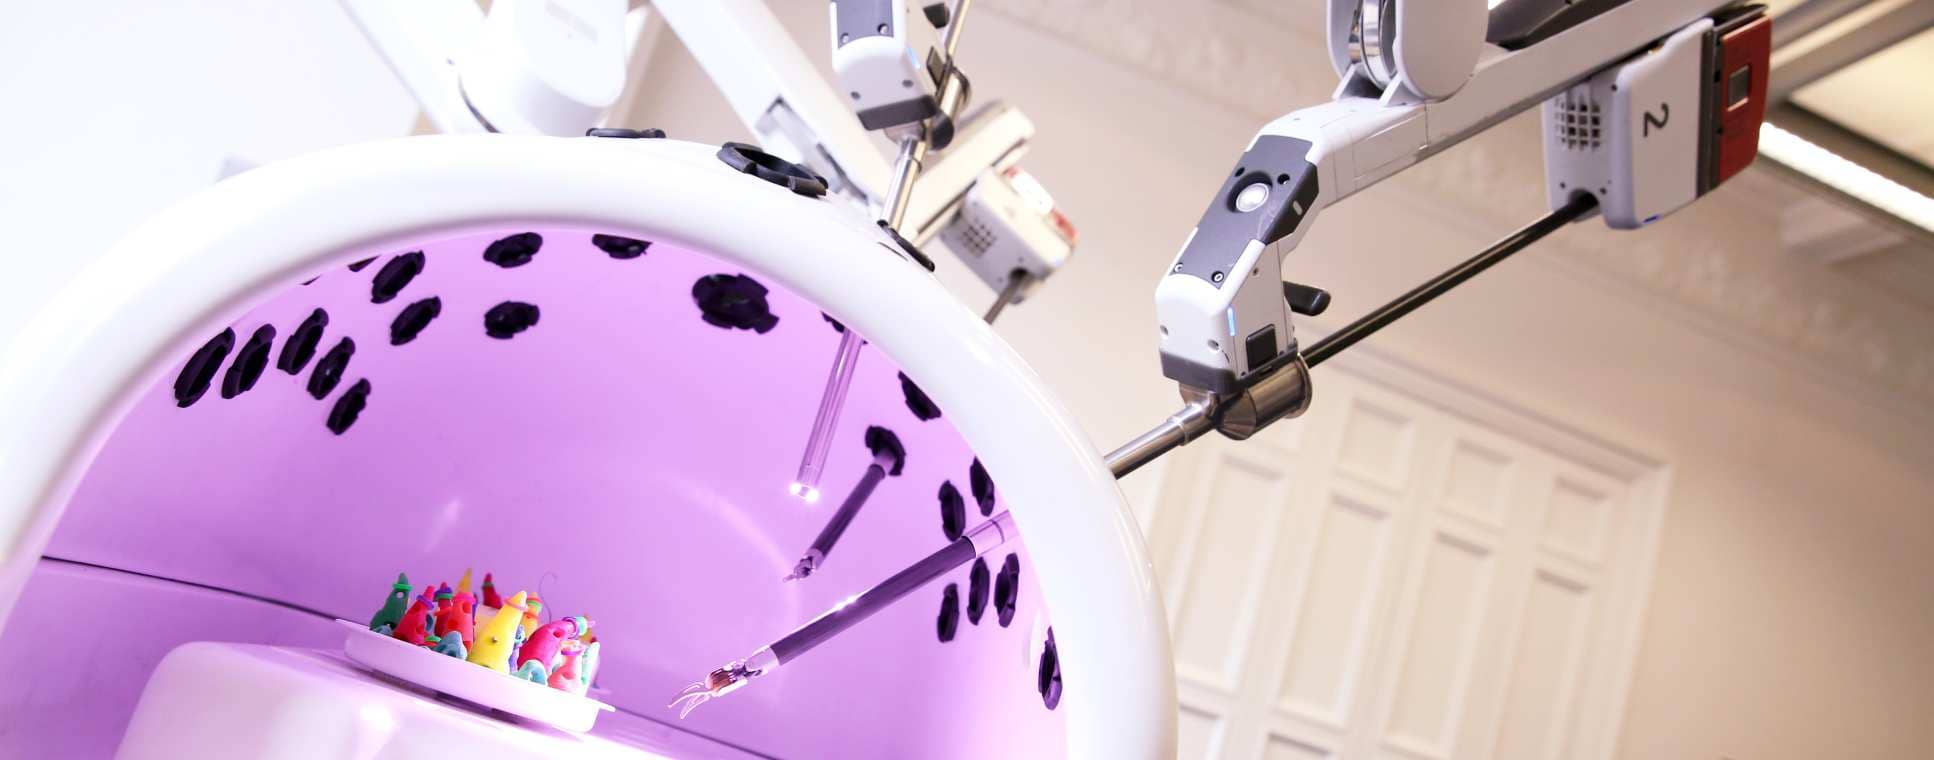 Железные хирурги: прошлое, настоящее и будущее медицинских роботов